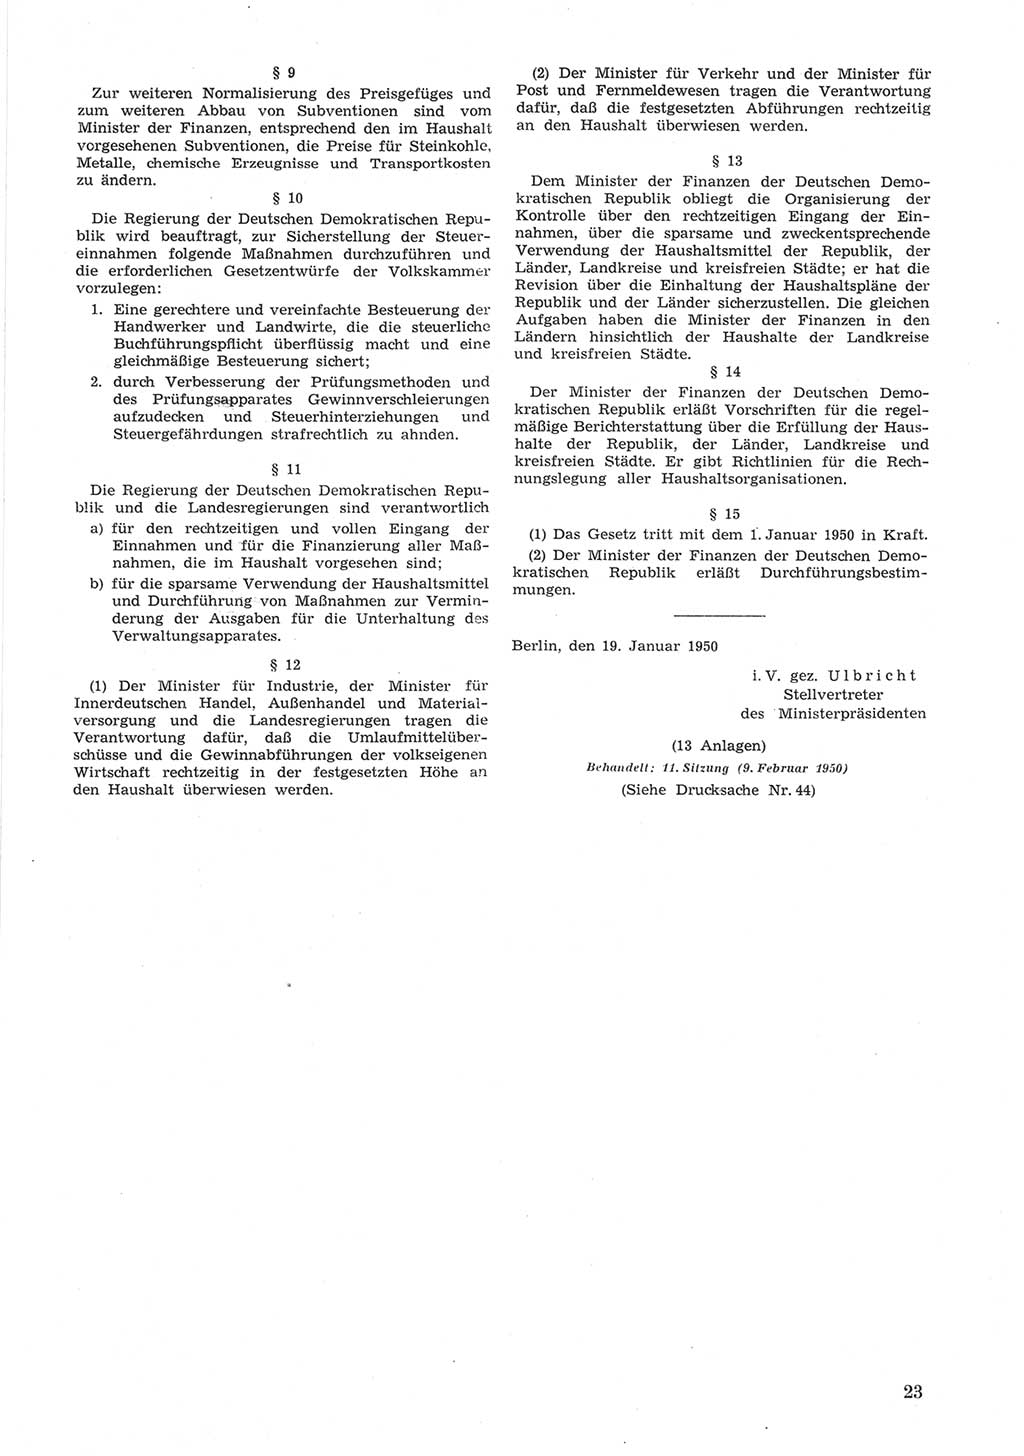 Provisorische Volkskammer (VK) der Deutschen Demokratischen Republik (DDR) 1949-1950, Dokument 623 (Prov. VK DDR 1949-1950, Dok. 623)